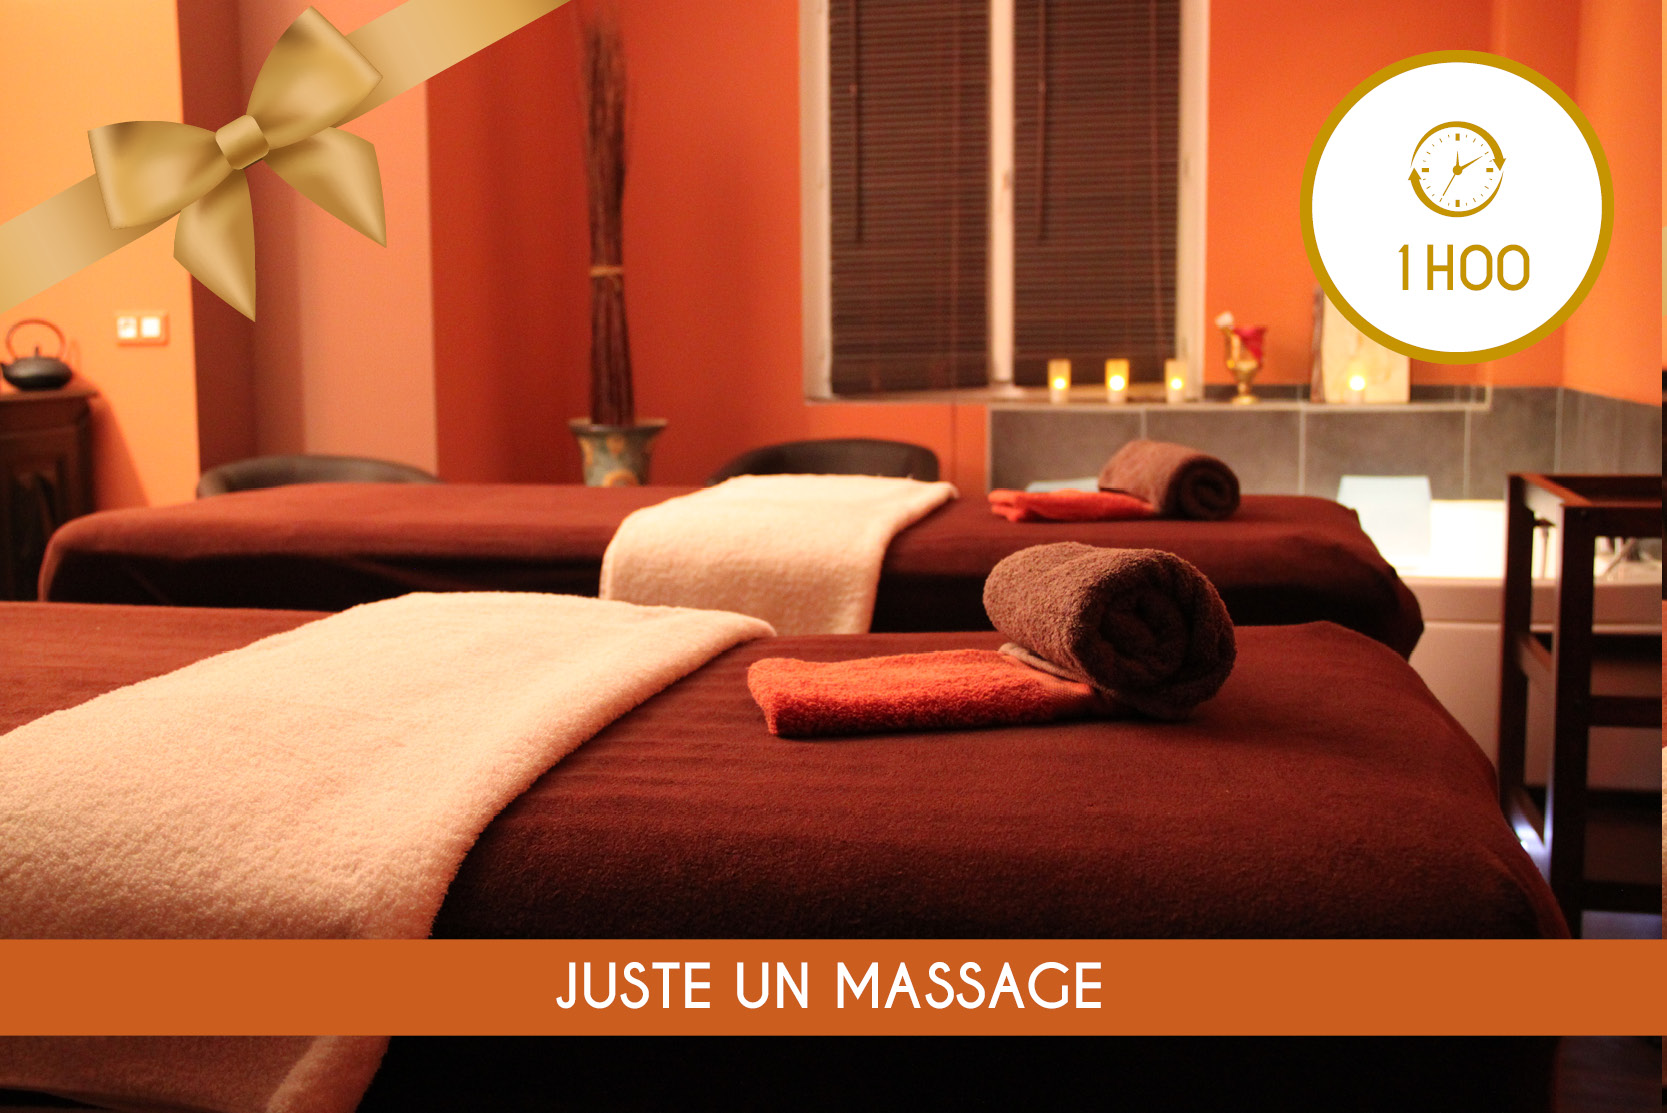 Juste un Massage (1h00) - solo